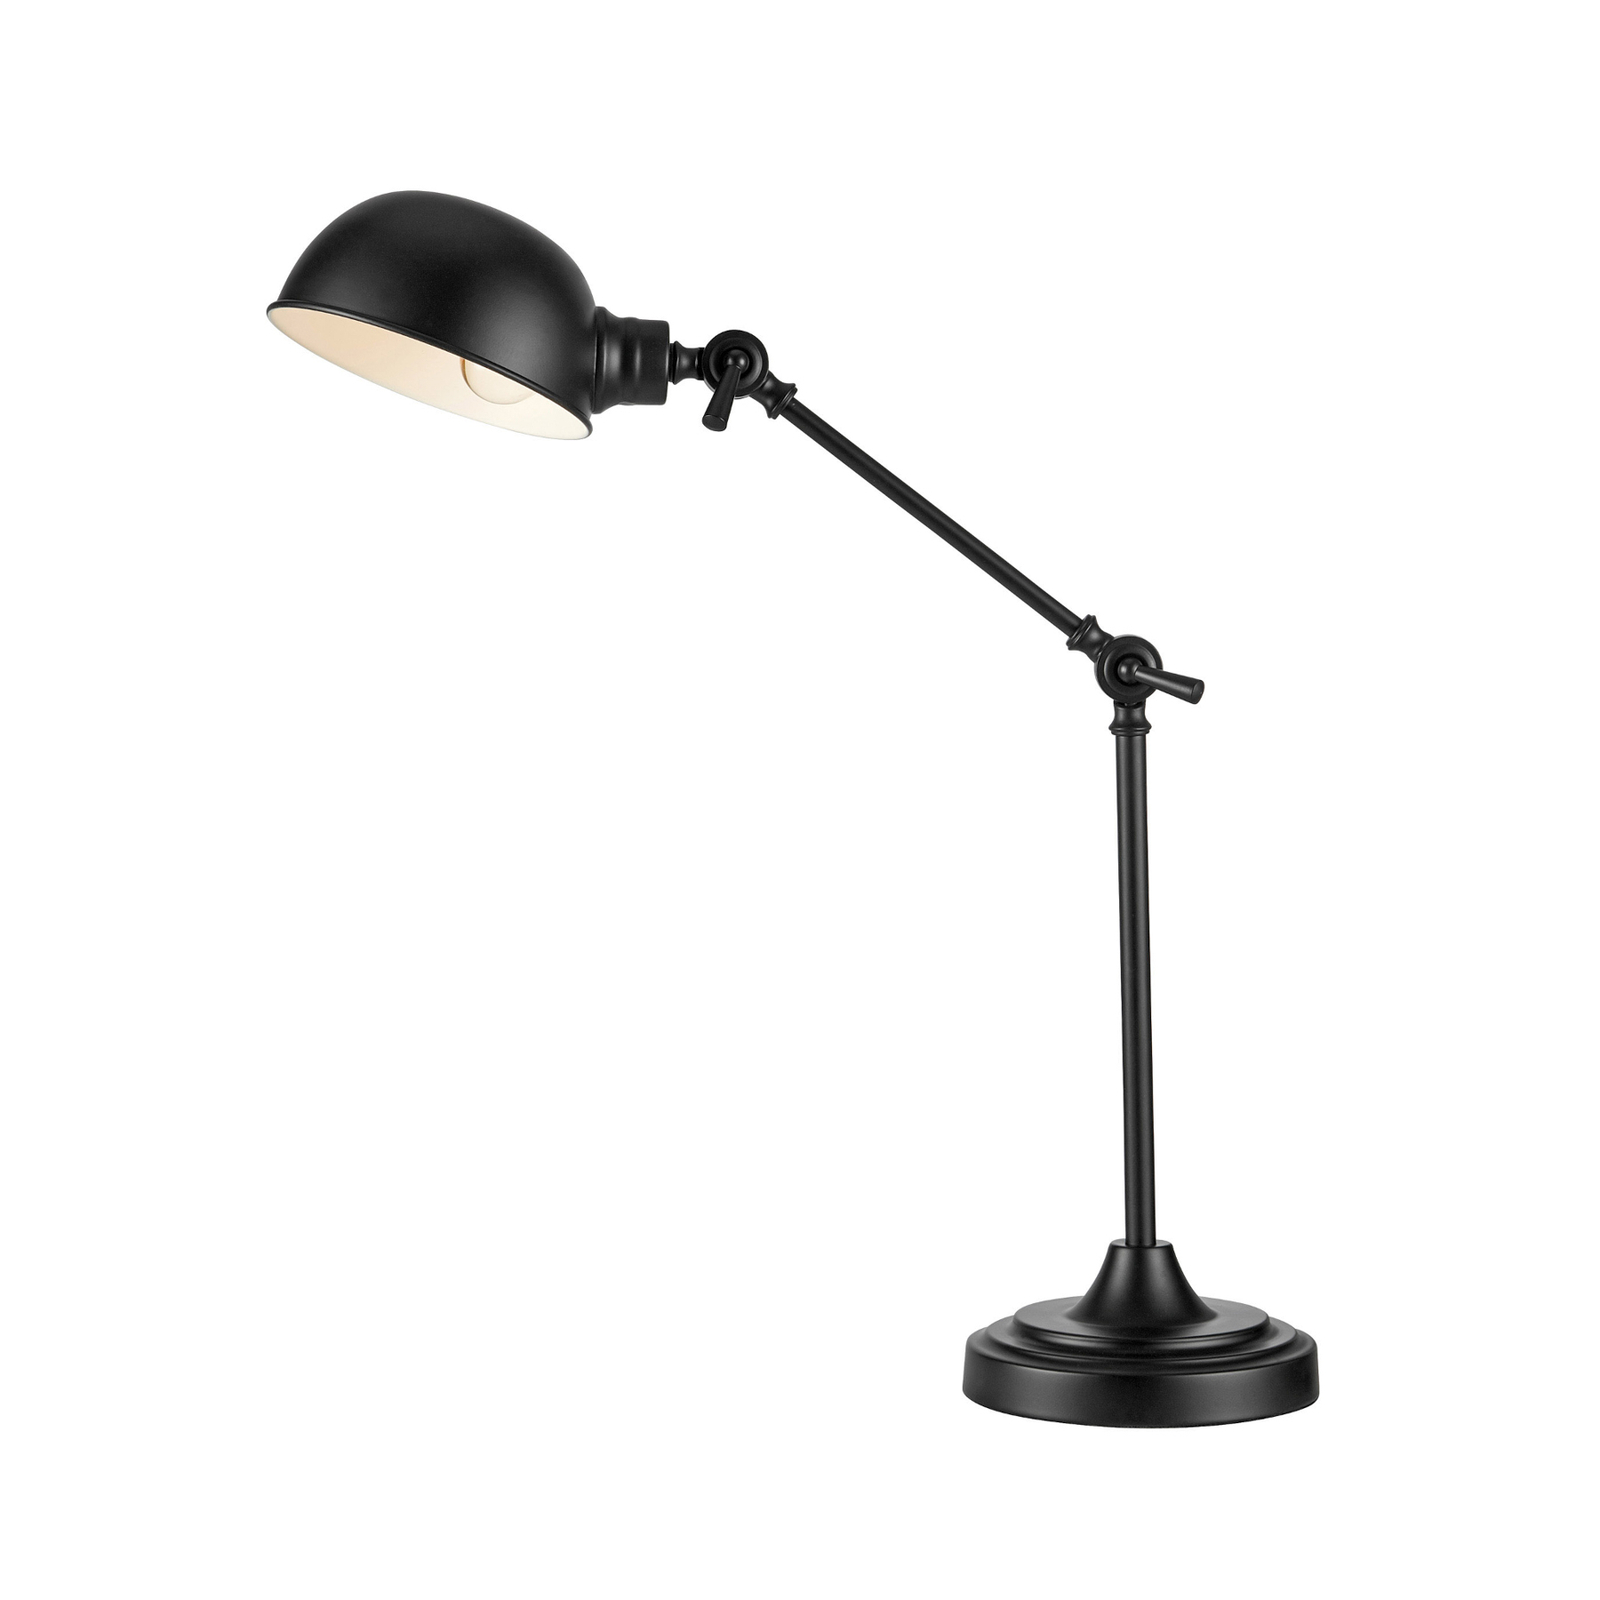 Portland bordslampa, 2-vägs justerbar, svart